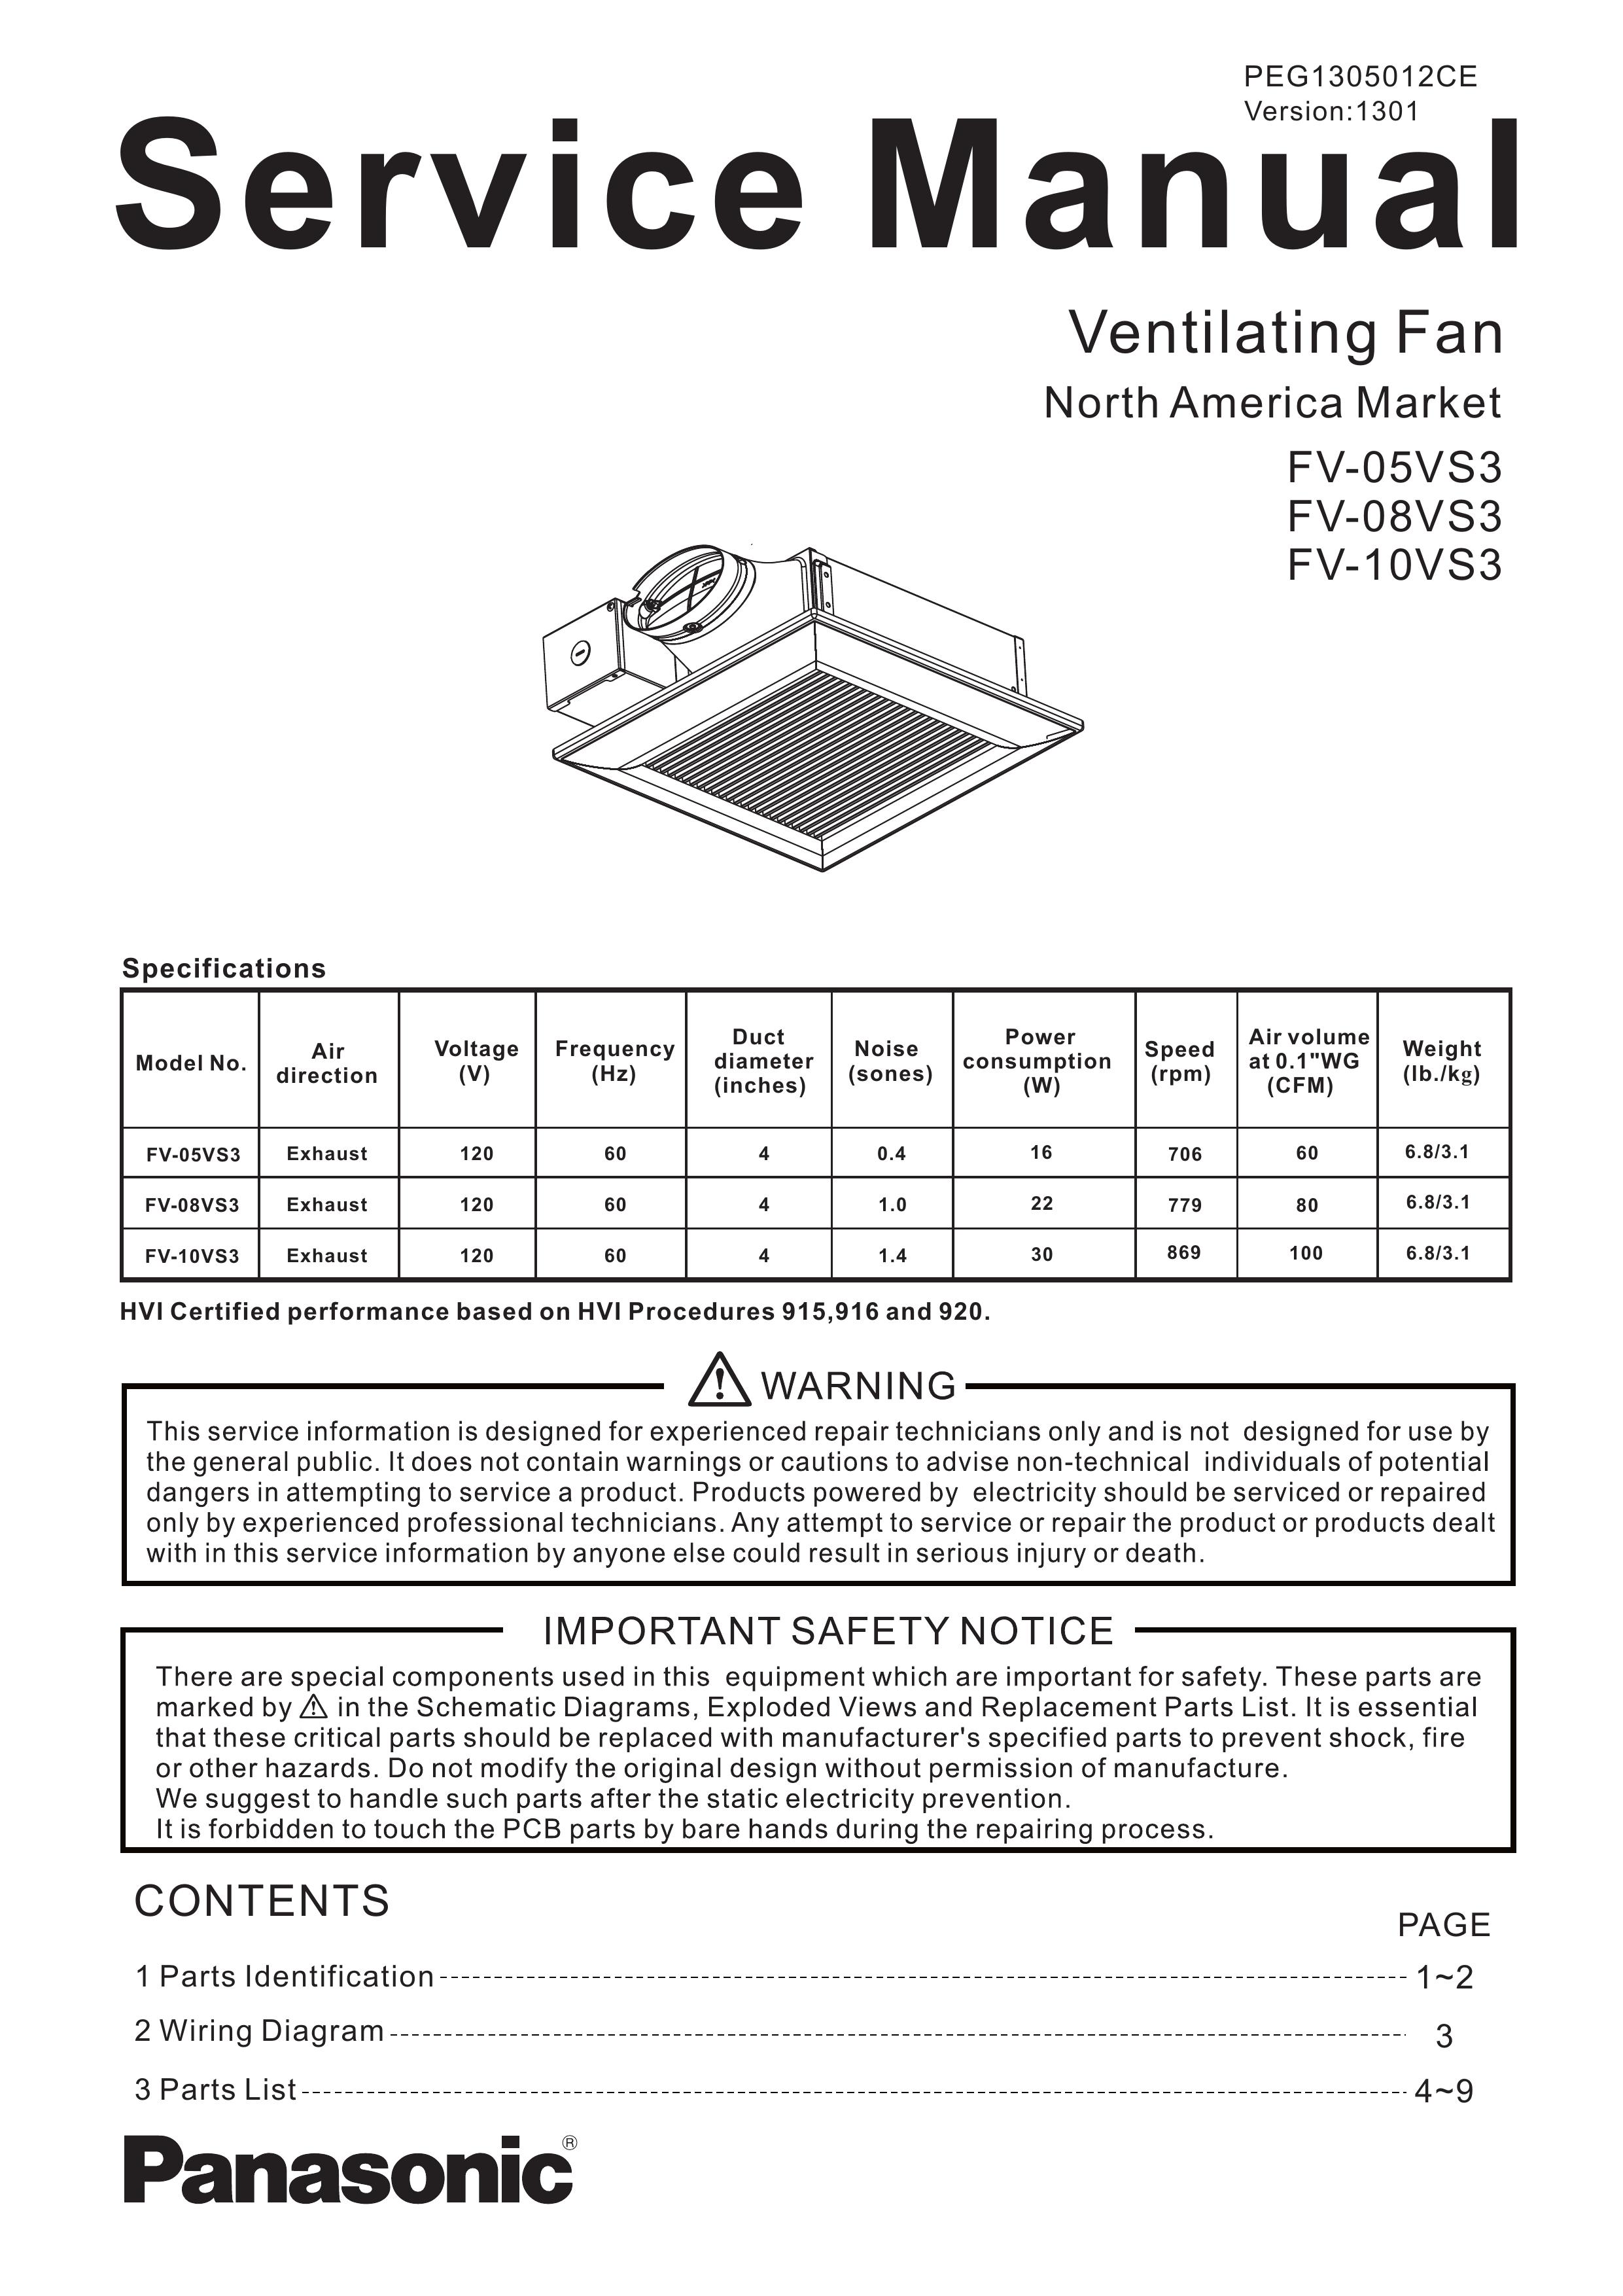 Panasonic FV-10VS3 Ventilation Hood User Manual